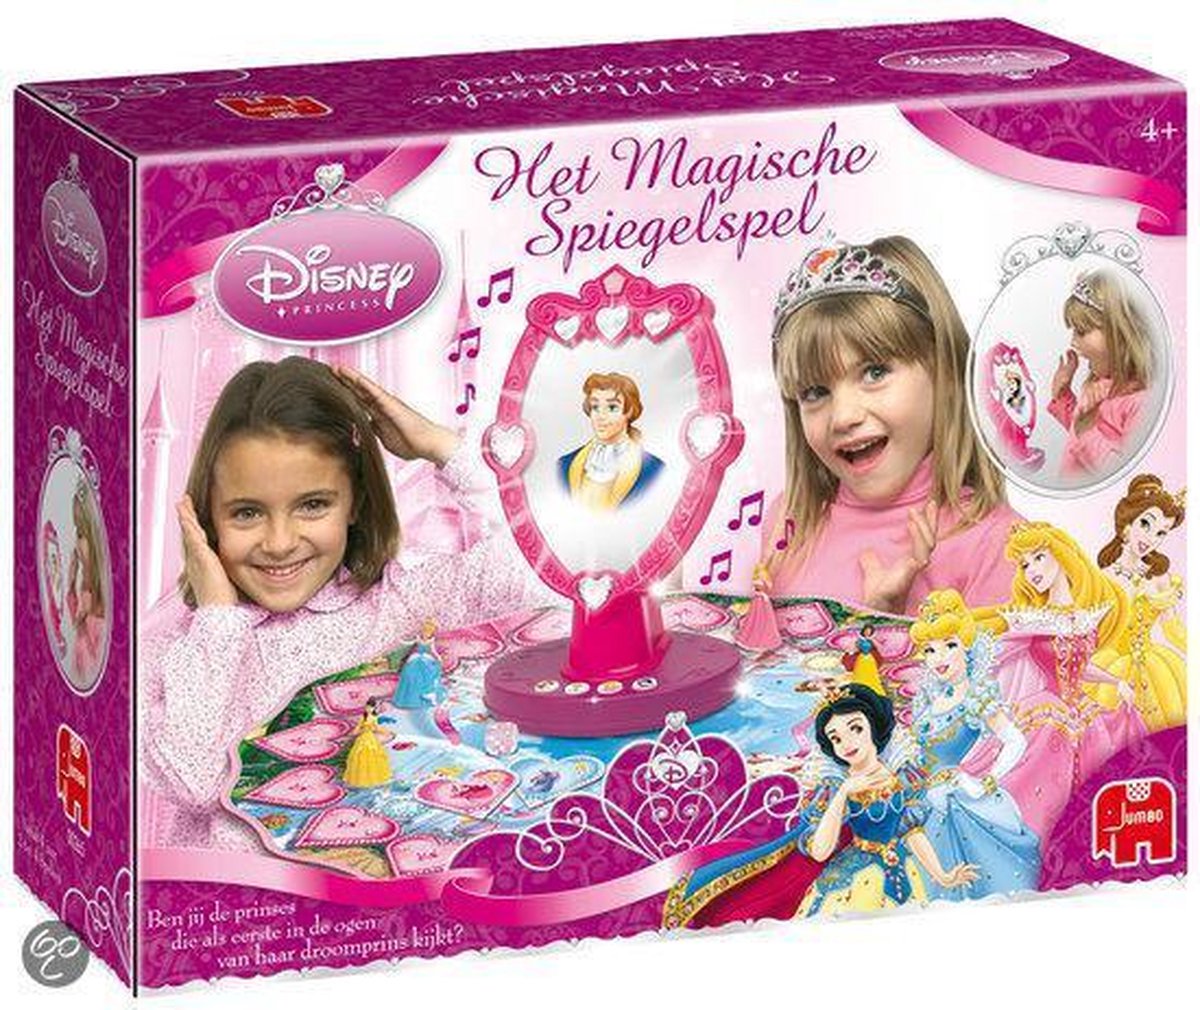 Het Magische Spiegelspel - Disney Princess | Games | bol.com